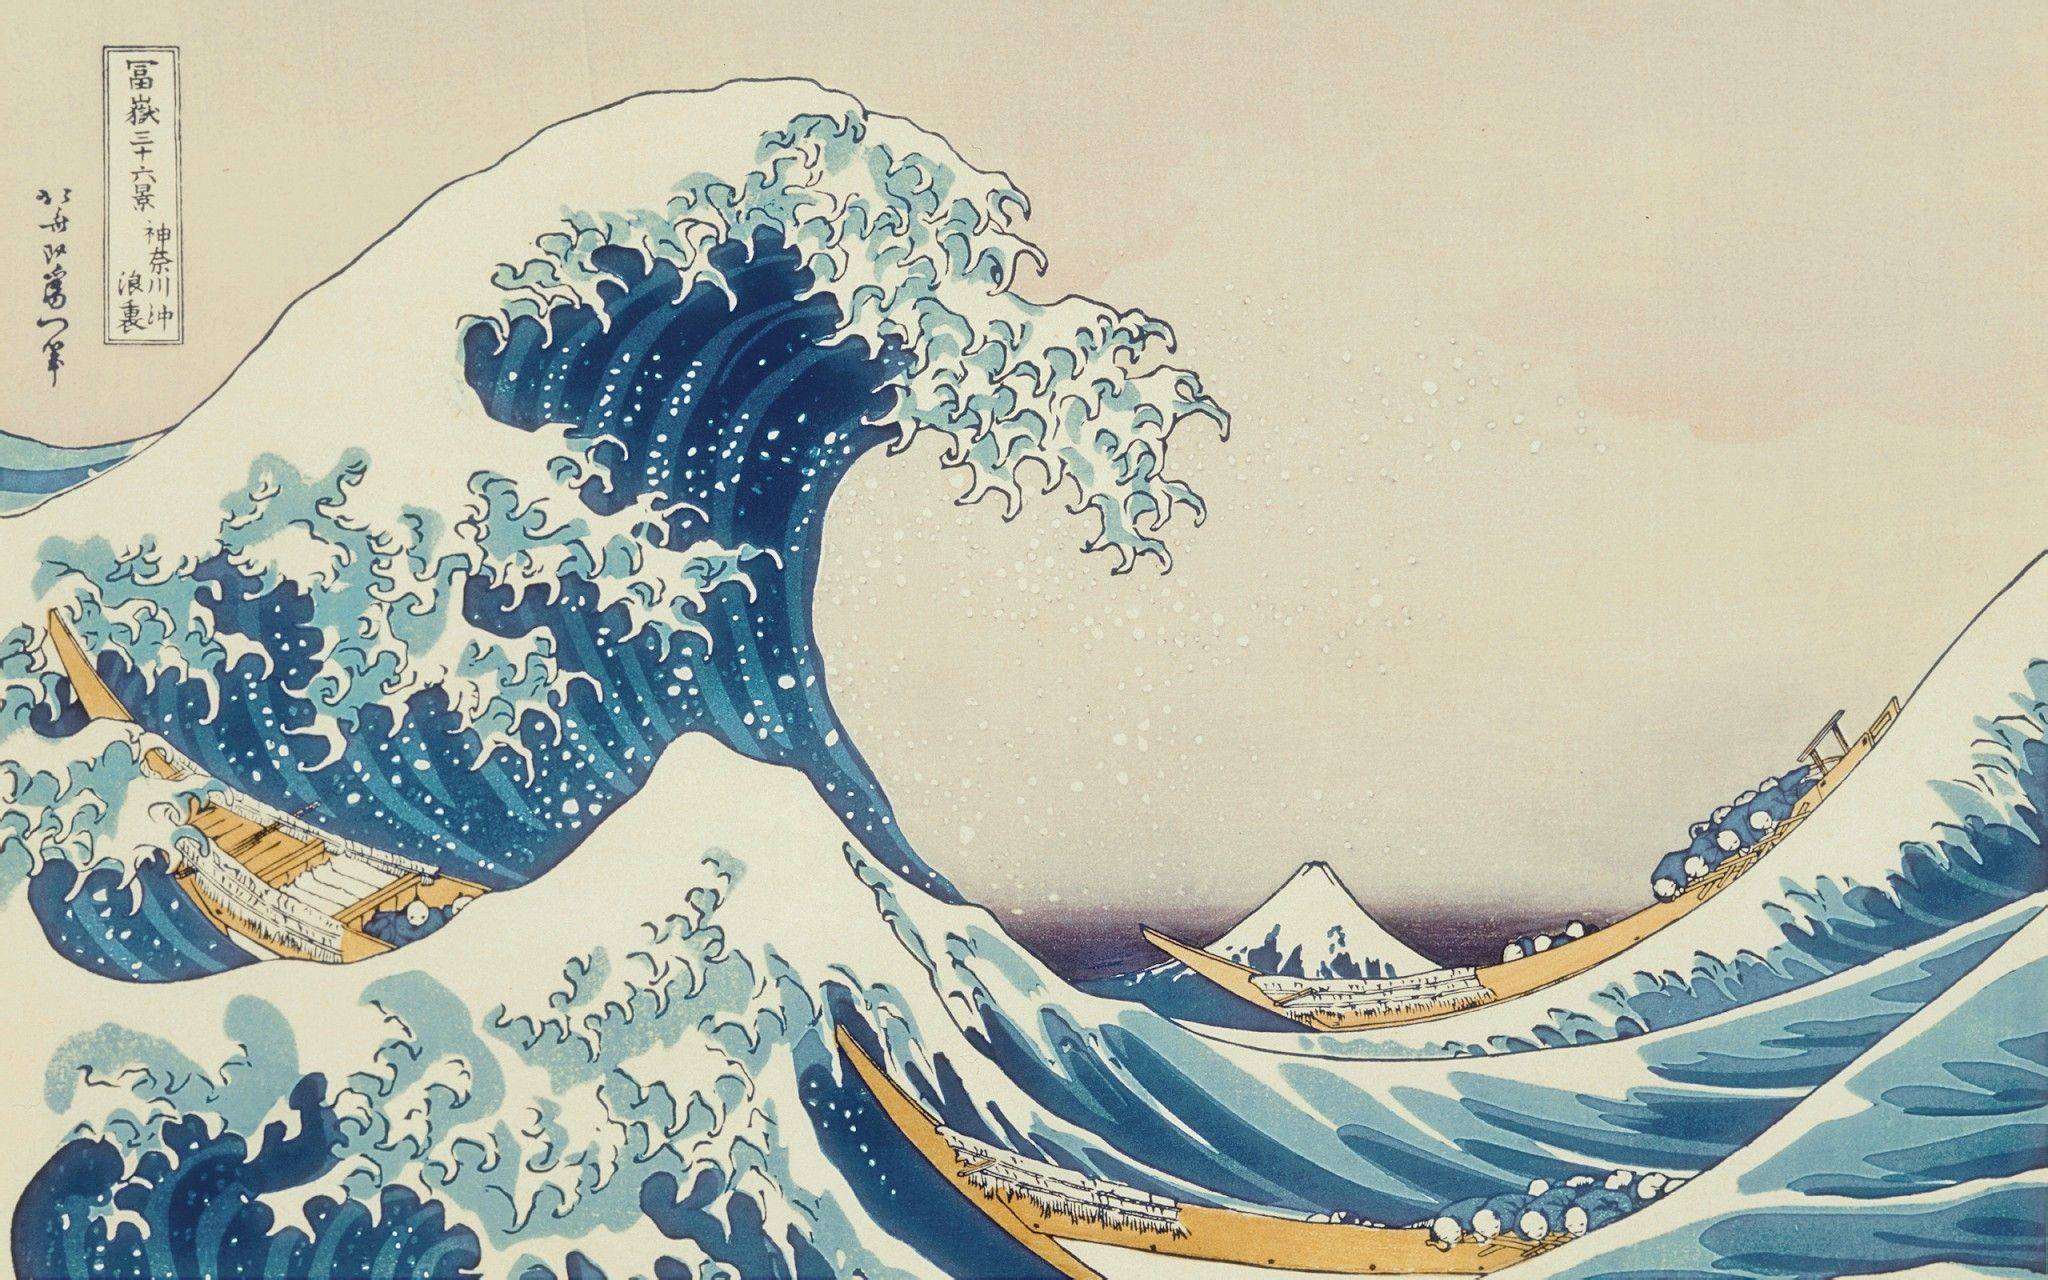 好比神户时代的浮世绘《神奈川冲浪里》,无论置身何处,都能呈现出动静